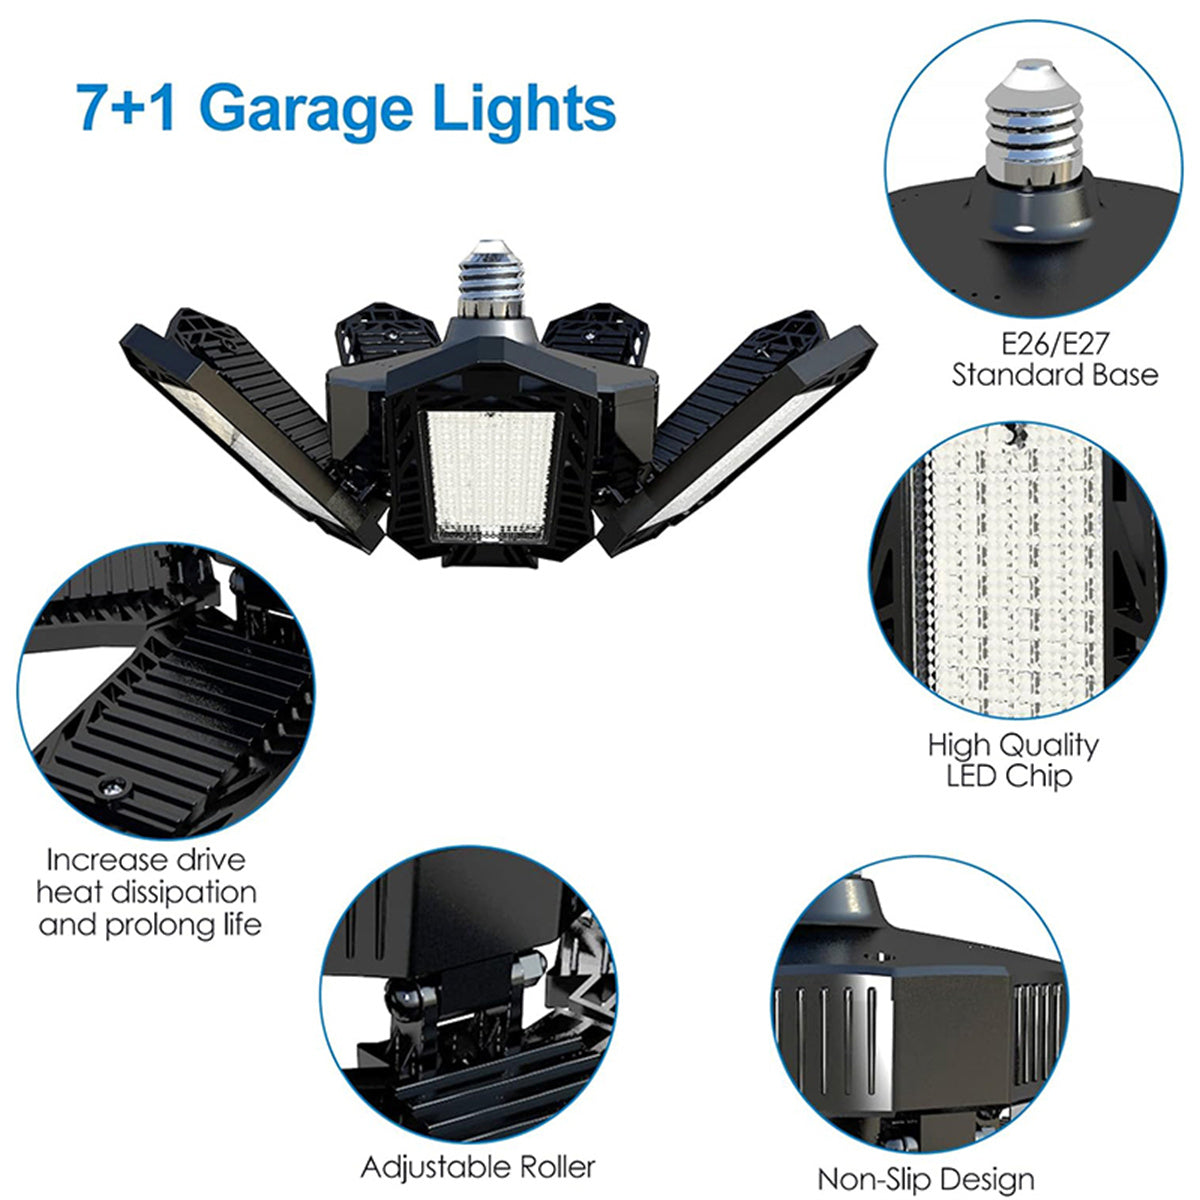 18500LM 6500K LED Garage Lights Ceiling Light with 7 Adjustable Panels Ultra Bright Deformable LED Shop Light for Garage Basement Workshop 220W , 2 Pack